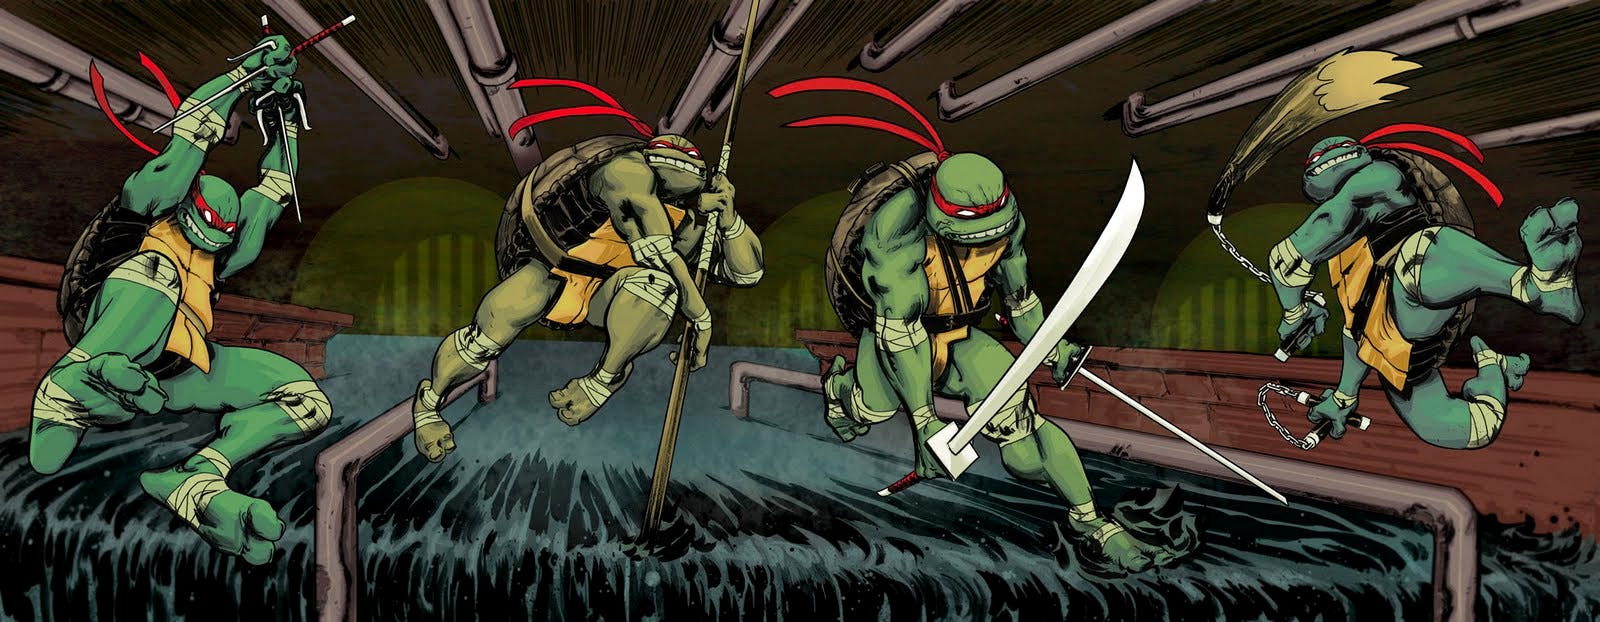 Lot de 6 armes tortues ninja mutantes adolescentes Viacom 2012